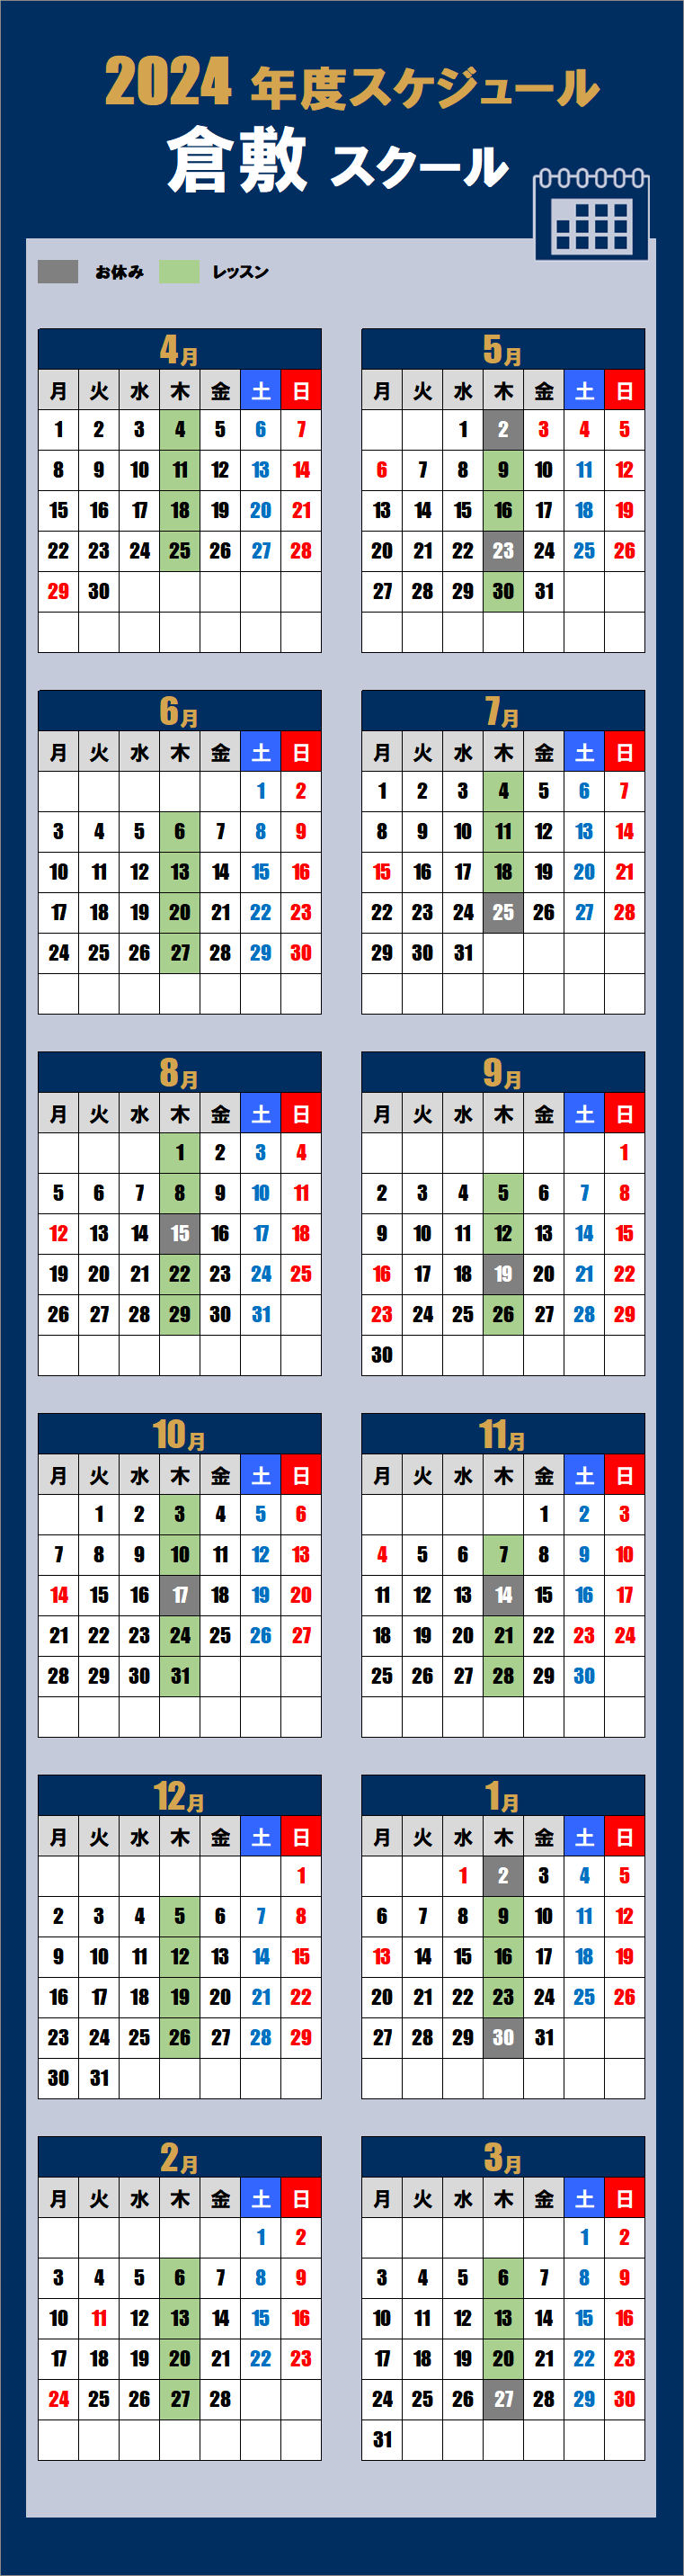 2024倉敷スクールカレンダー